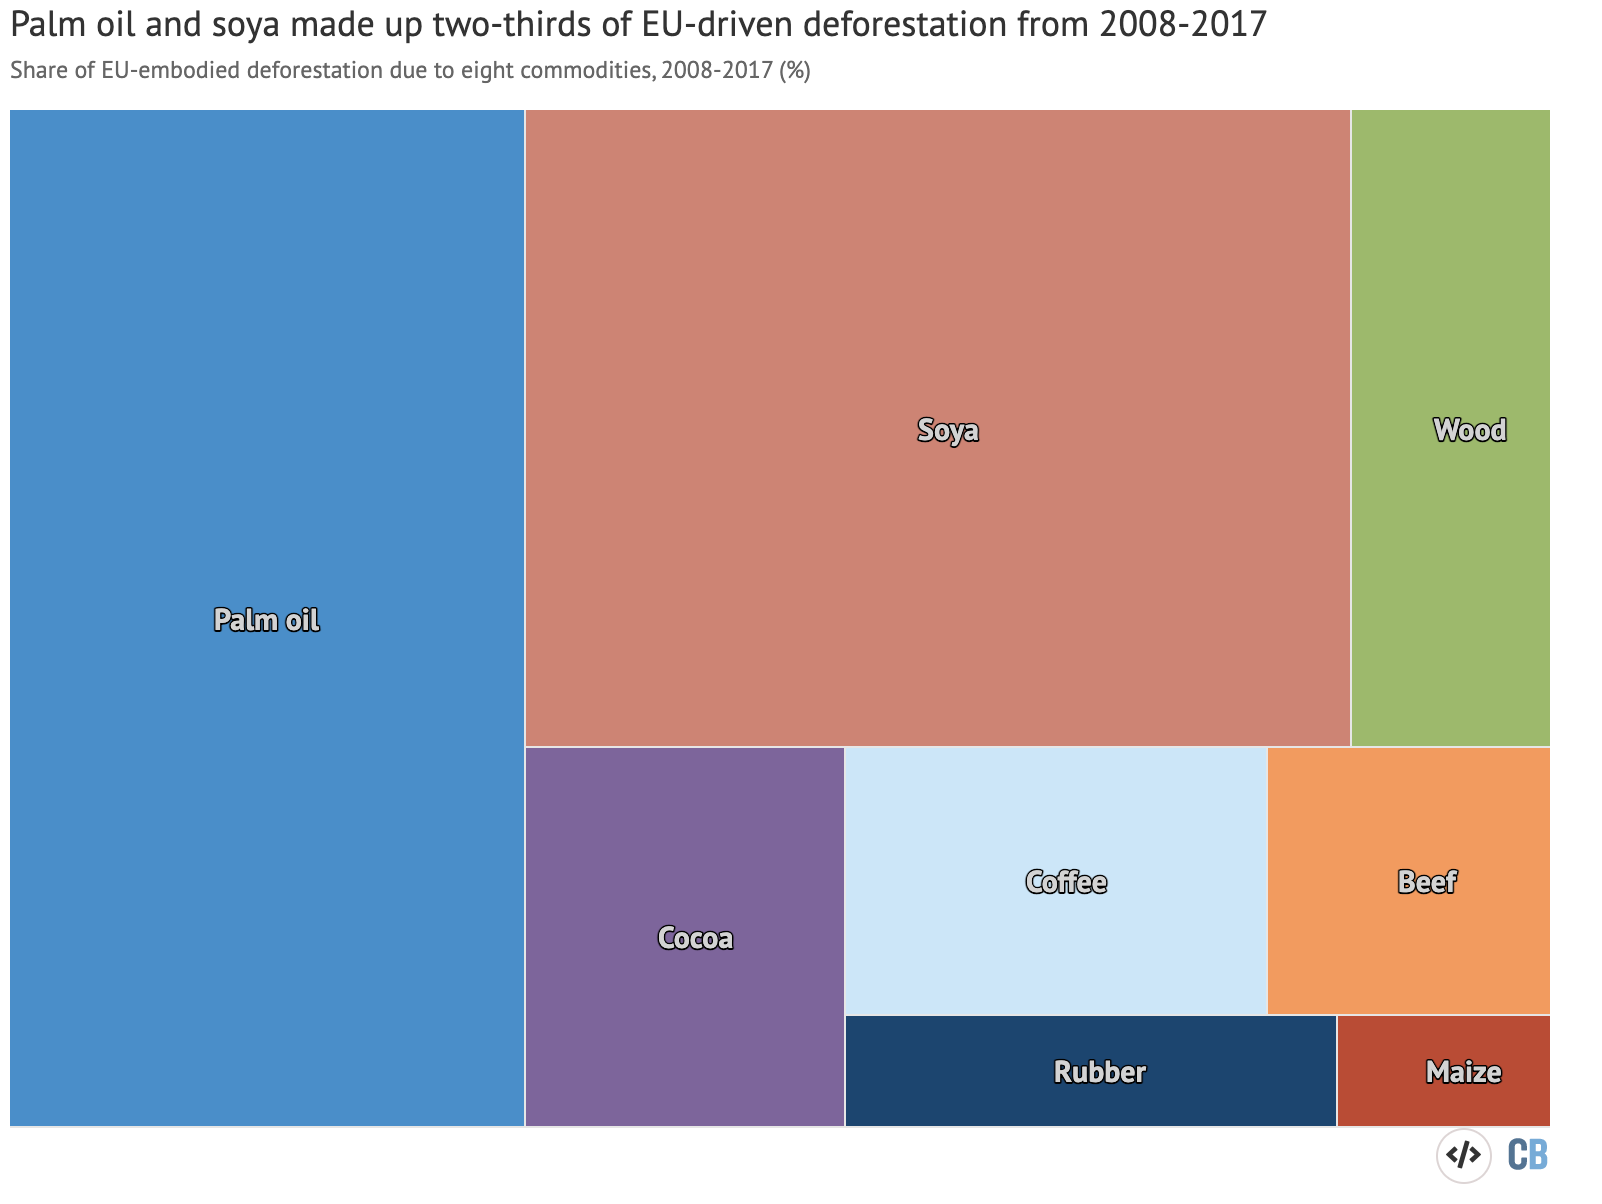 مساهمات ثماني سلع أساسية في إزالة الغابات التي يقودها الاتحاد الأوروبي بين عامي 2008 و 2017. النسب المئوية معروضة لزيت النخيل (الأزرق) ، وفول الصويا (الأحمر) ، والخشب (الأخضر) ، والكاكاو (الأرجواني) ، والبن (الأزرق الفاتح) ، ولحم البقر (البرتقالي) ) والمطاط (أزرق غامق) والذرة (أحمر غامق). المصدر: المفوضية الأوروبية (2021)